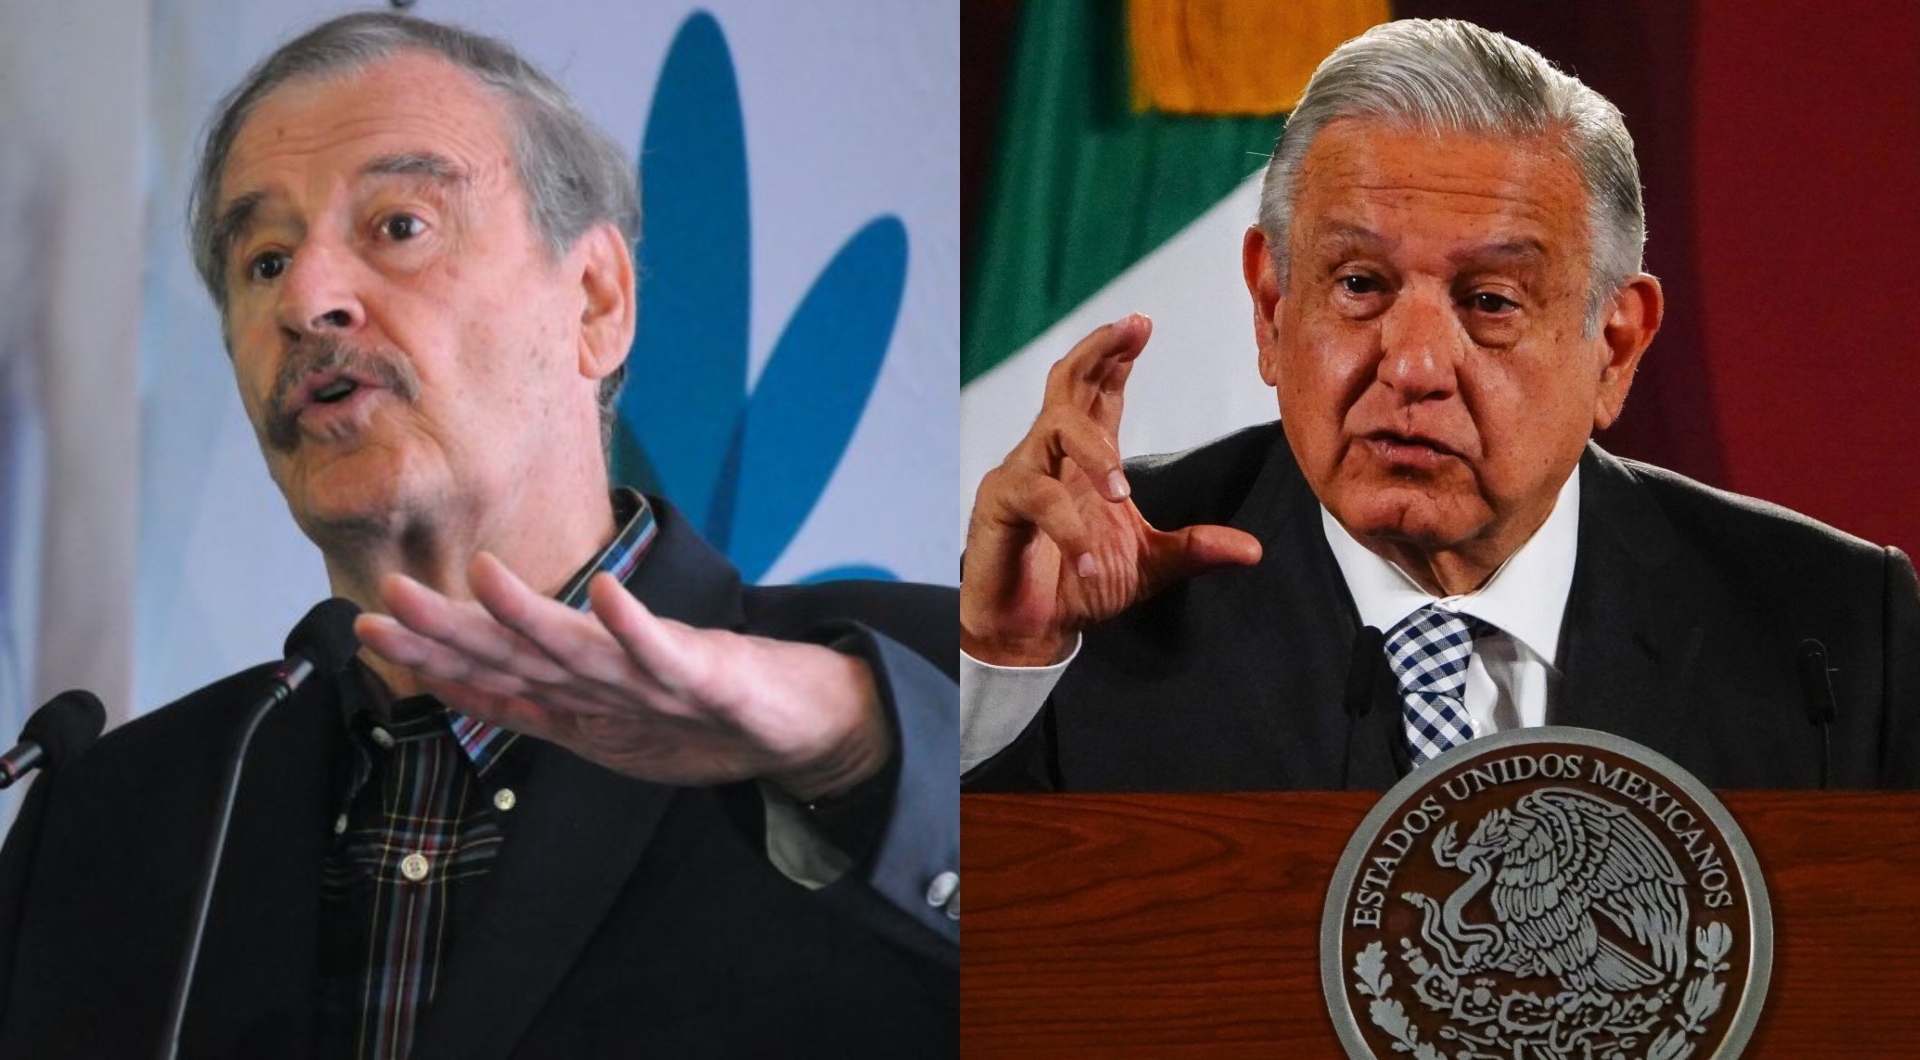 Vicente Fox advirtió a López Obrador que no se meta con las iglesias ni con sus dirigentes, pues se trata de terrenos "peligrosos" (Foto: Cuartoscuro)